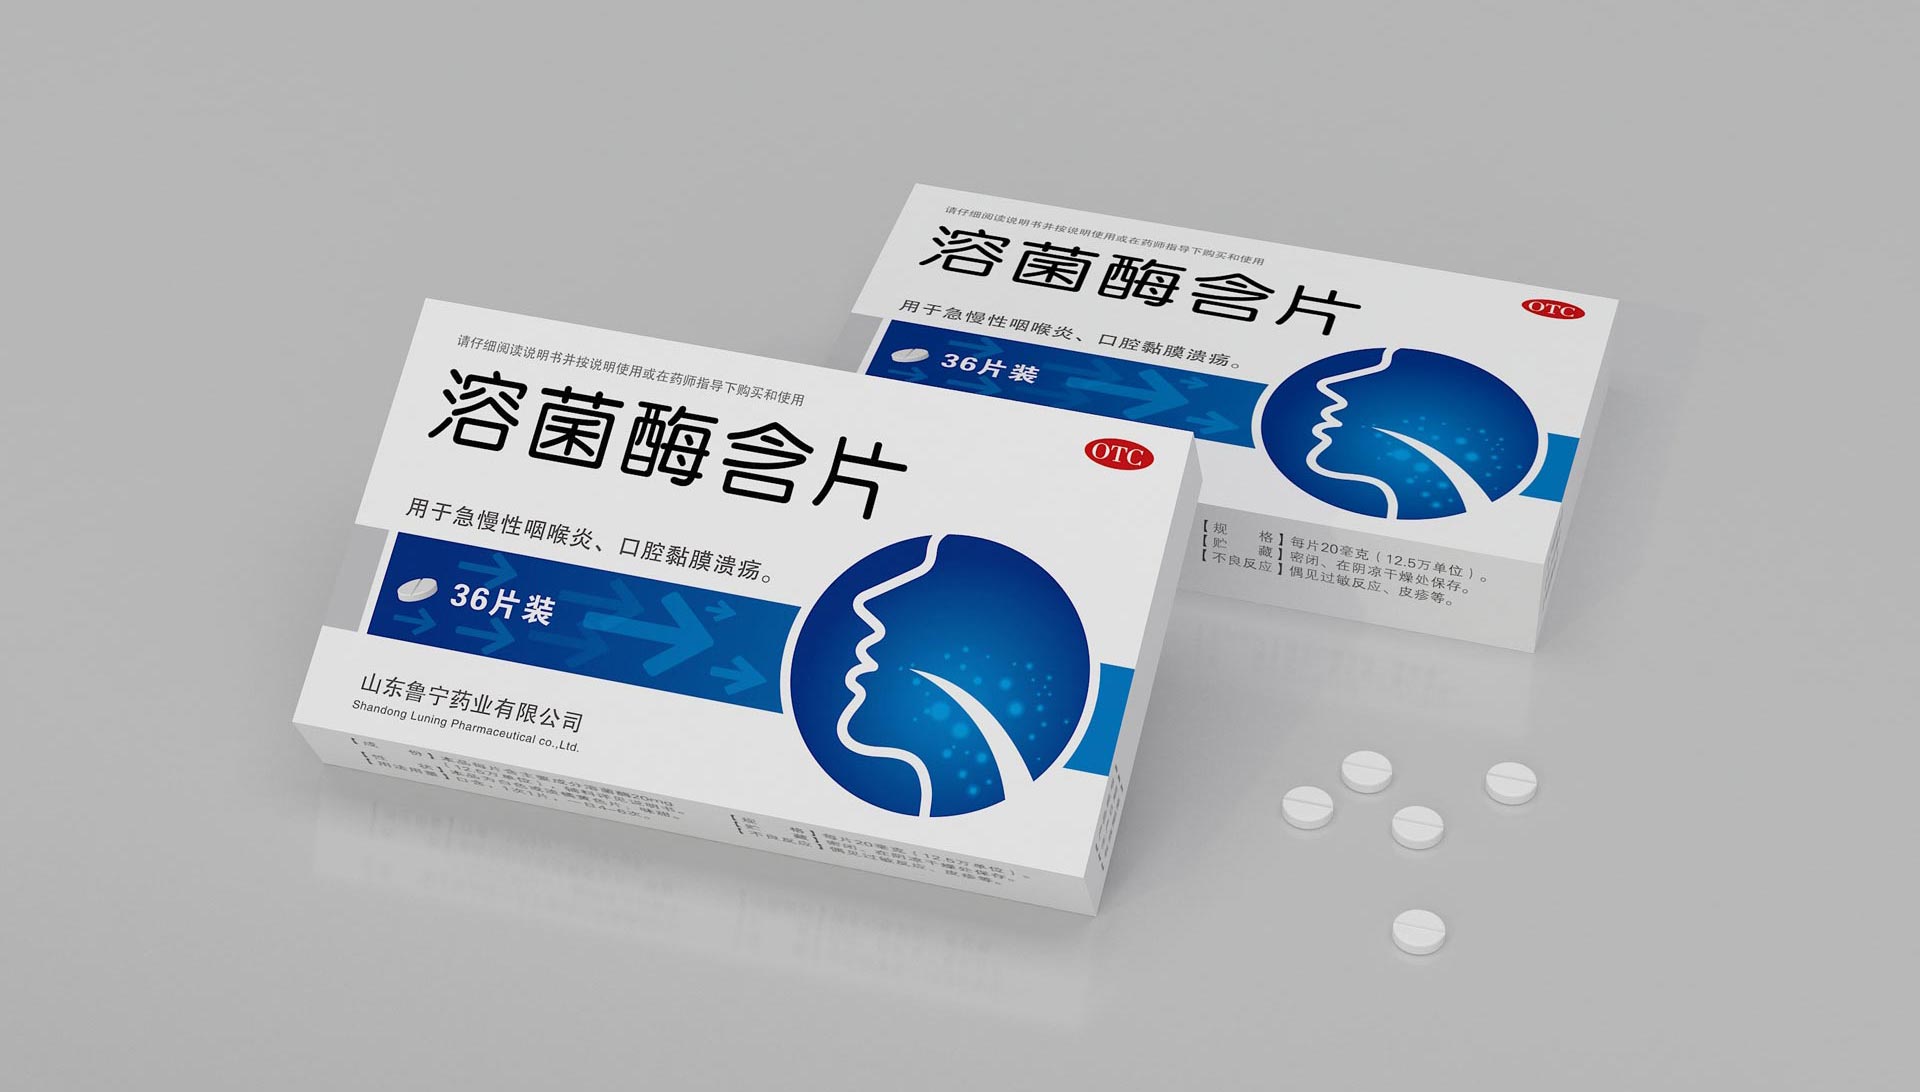 咽炎药品包装设计，咽炎片包装设计，咽炎胶囊包装设计，咽喉炎药品包装设计，上海包装设计公司